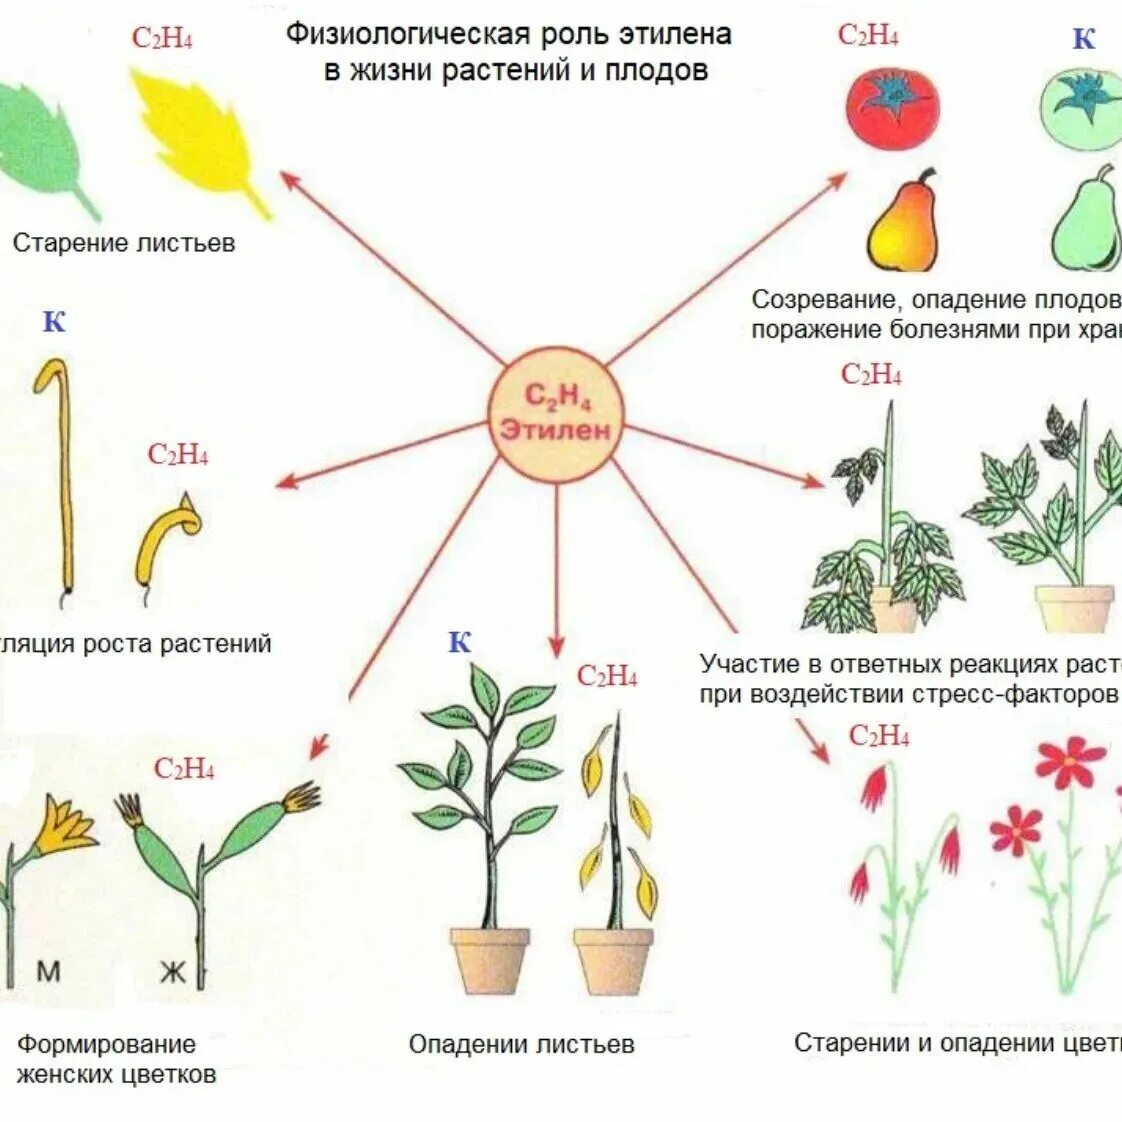 Действие фитогормонов на растение. Этилен фитогормон. Влияние этилена на растения. Этилен гормон роста. Этилен фитогормон функции.